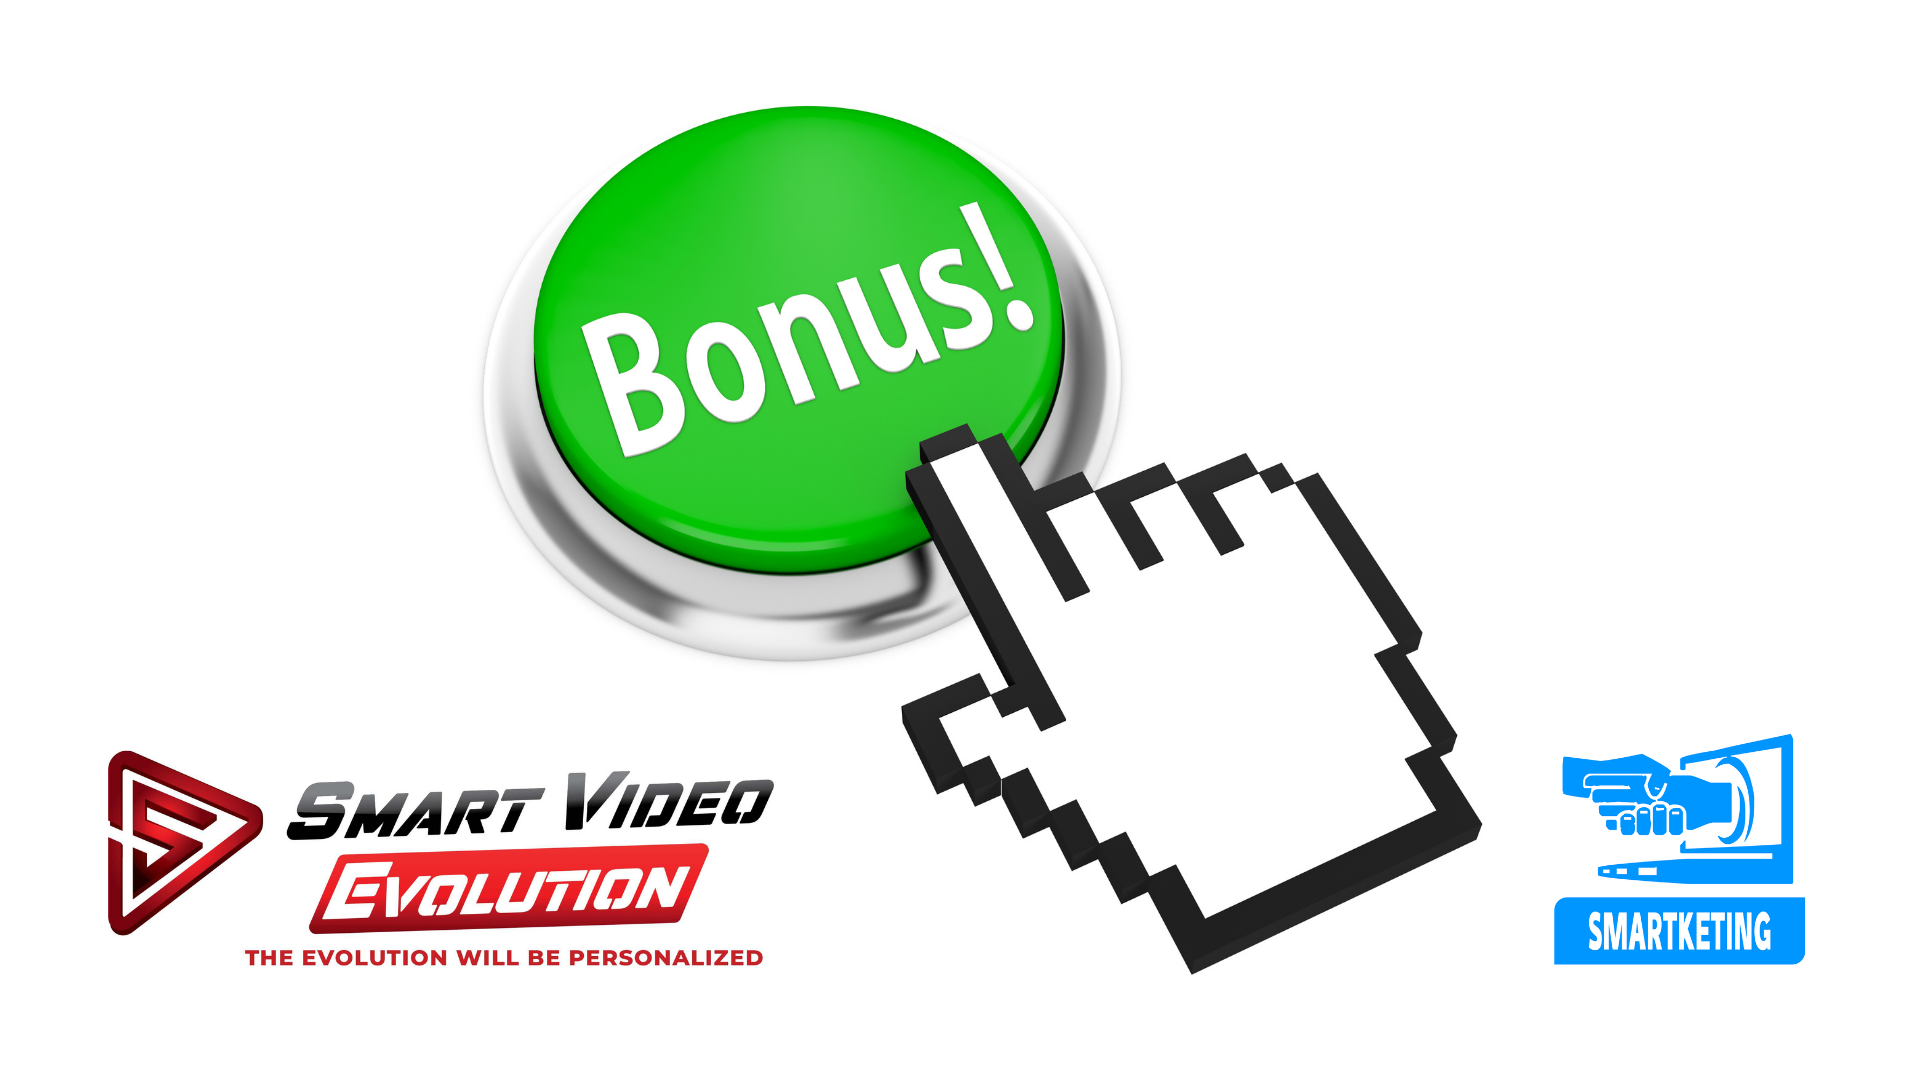 Cliquez sur ce lien pour acheter SmartVideo et recevoir tous ses bonus: